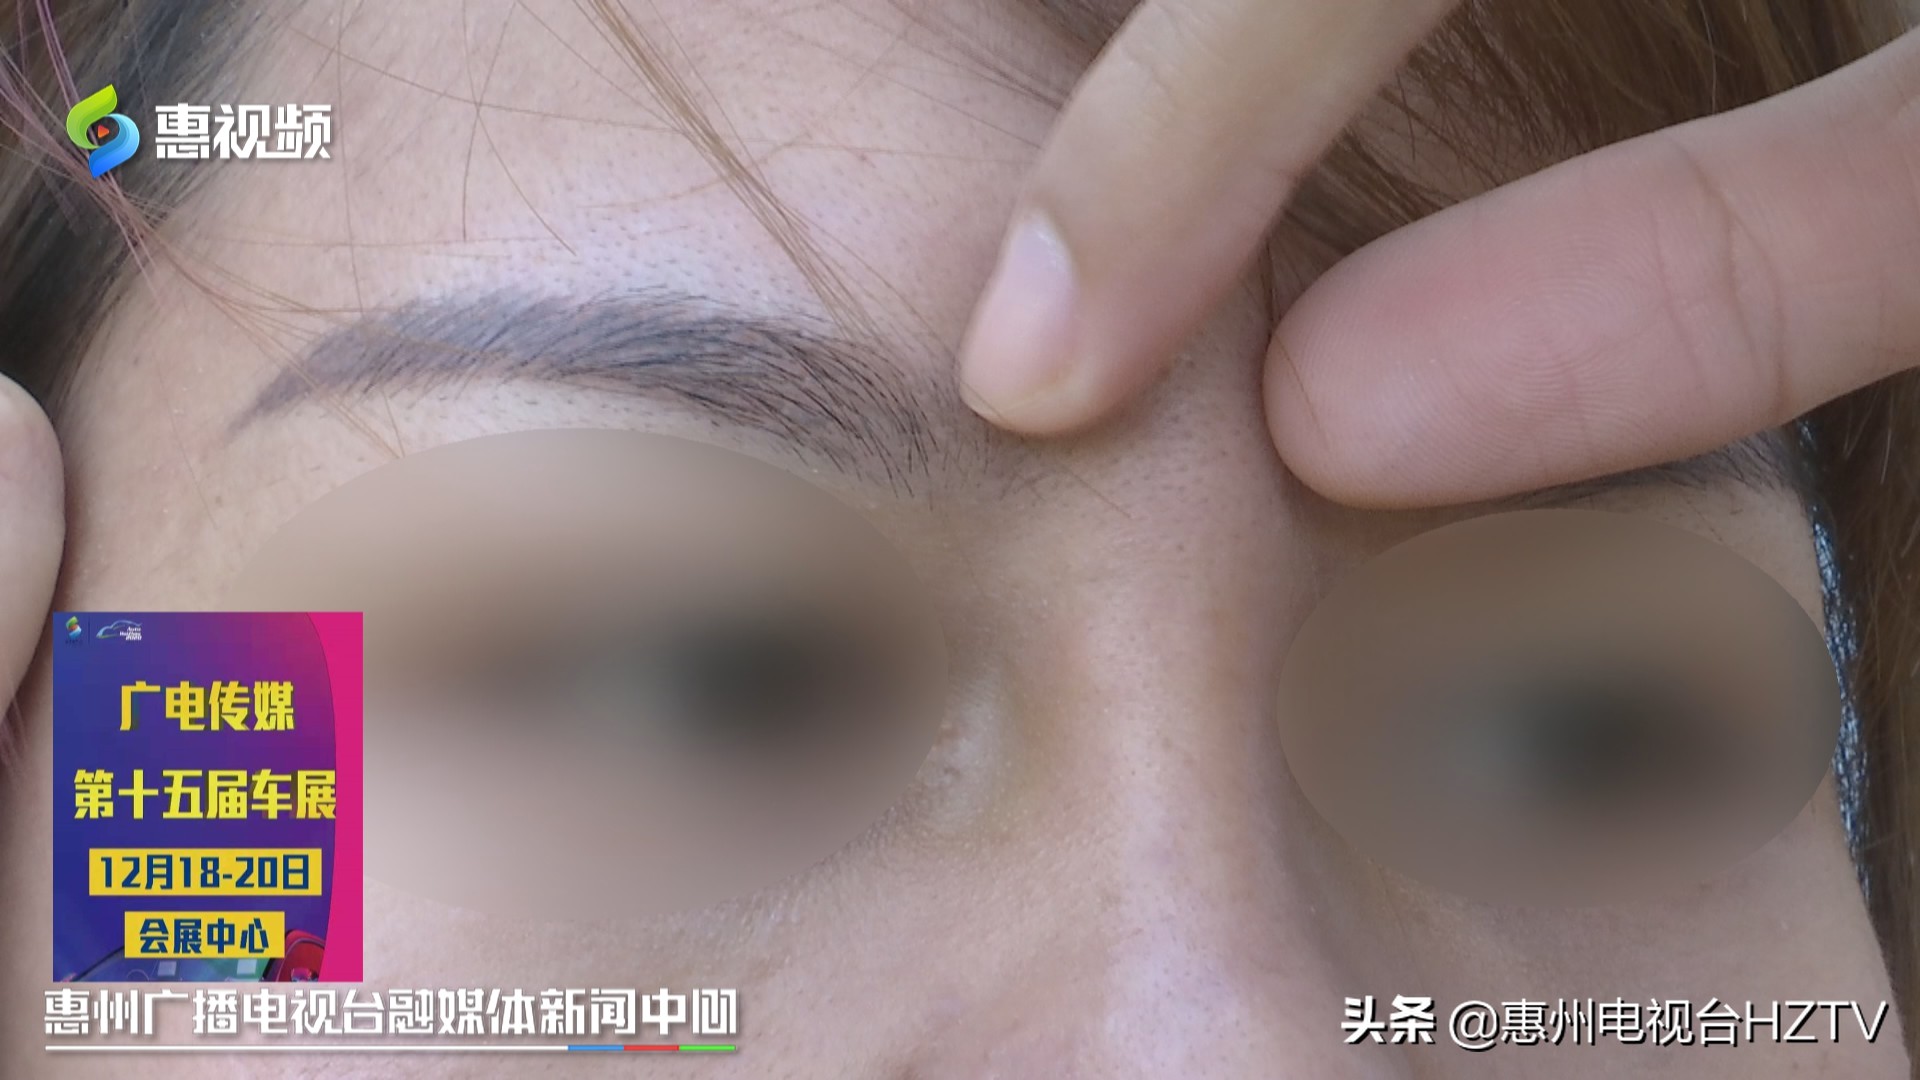 惠州：女子隆鼻后不适要退款，尚妍医疗美容称不满意可走鉴定程序